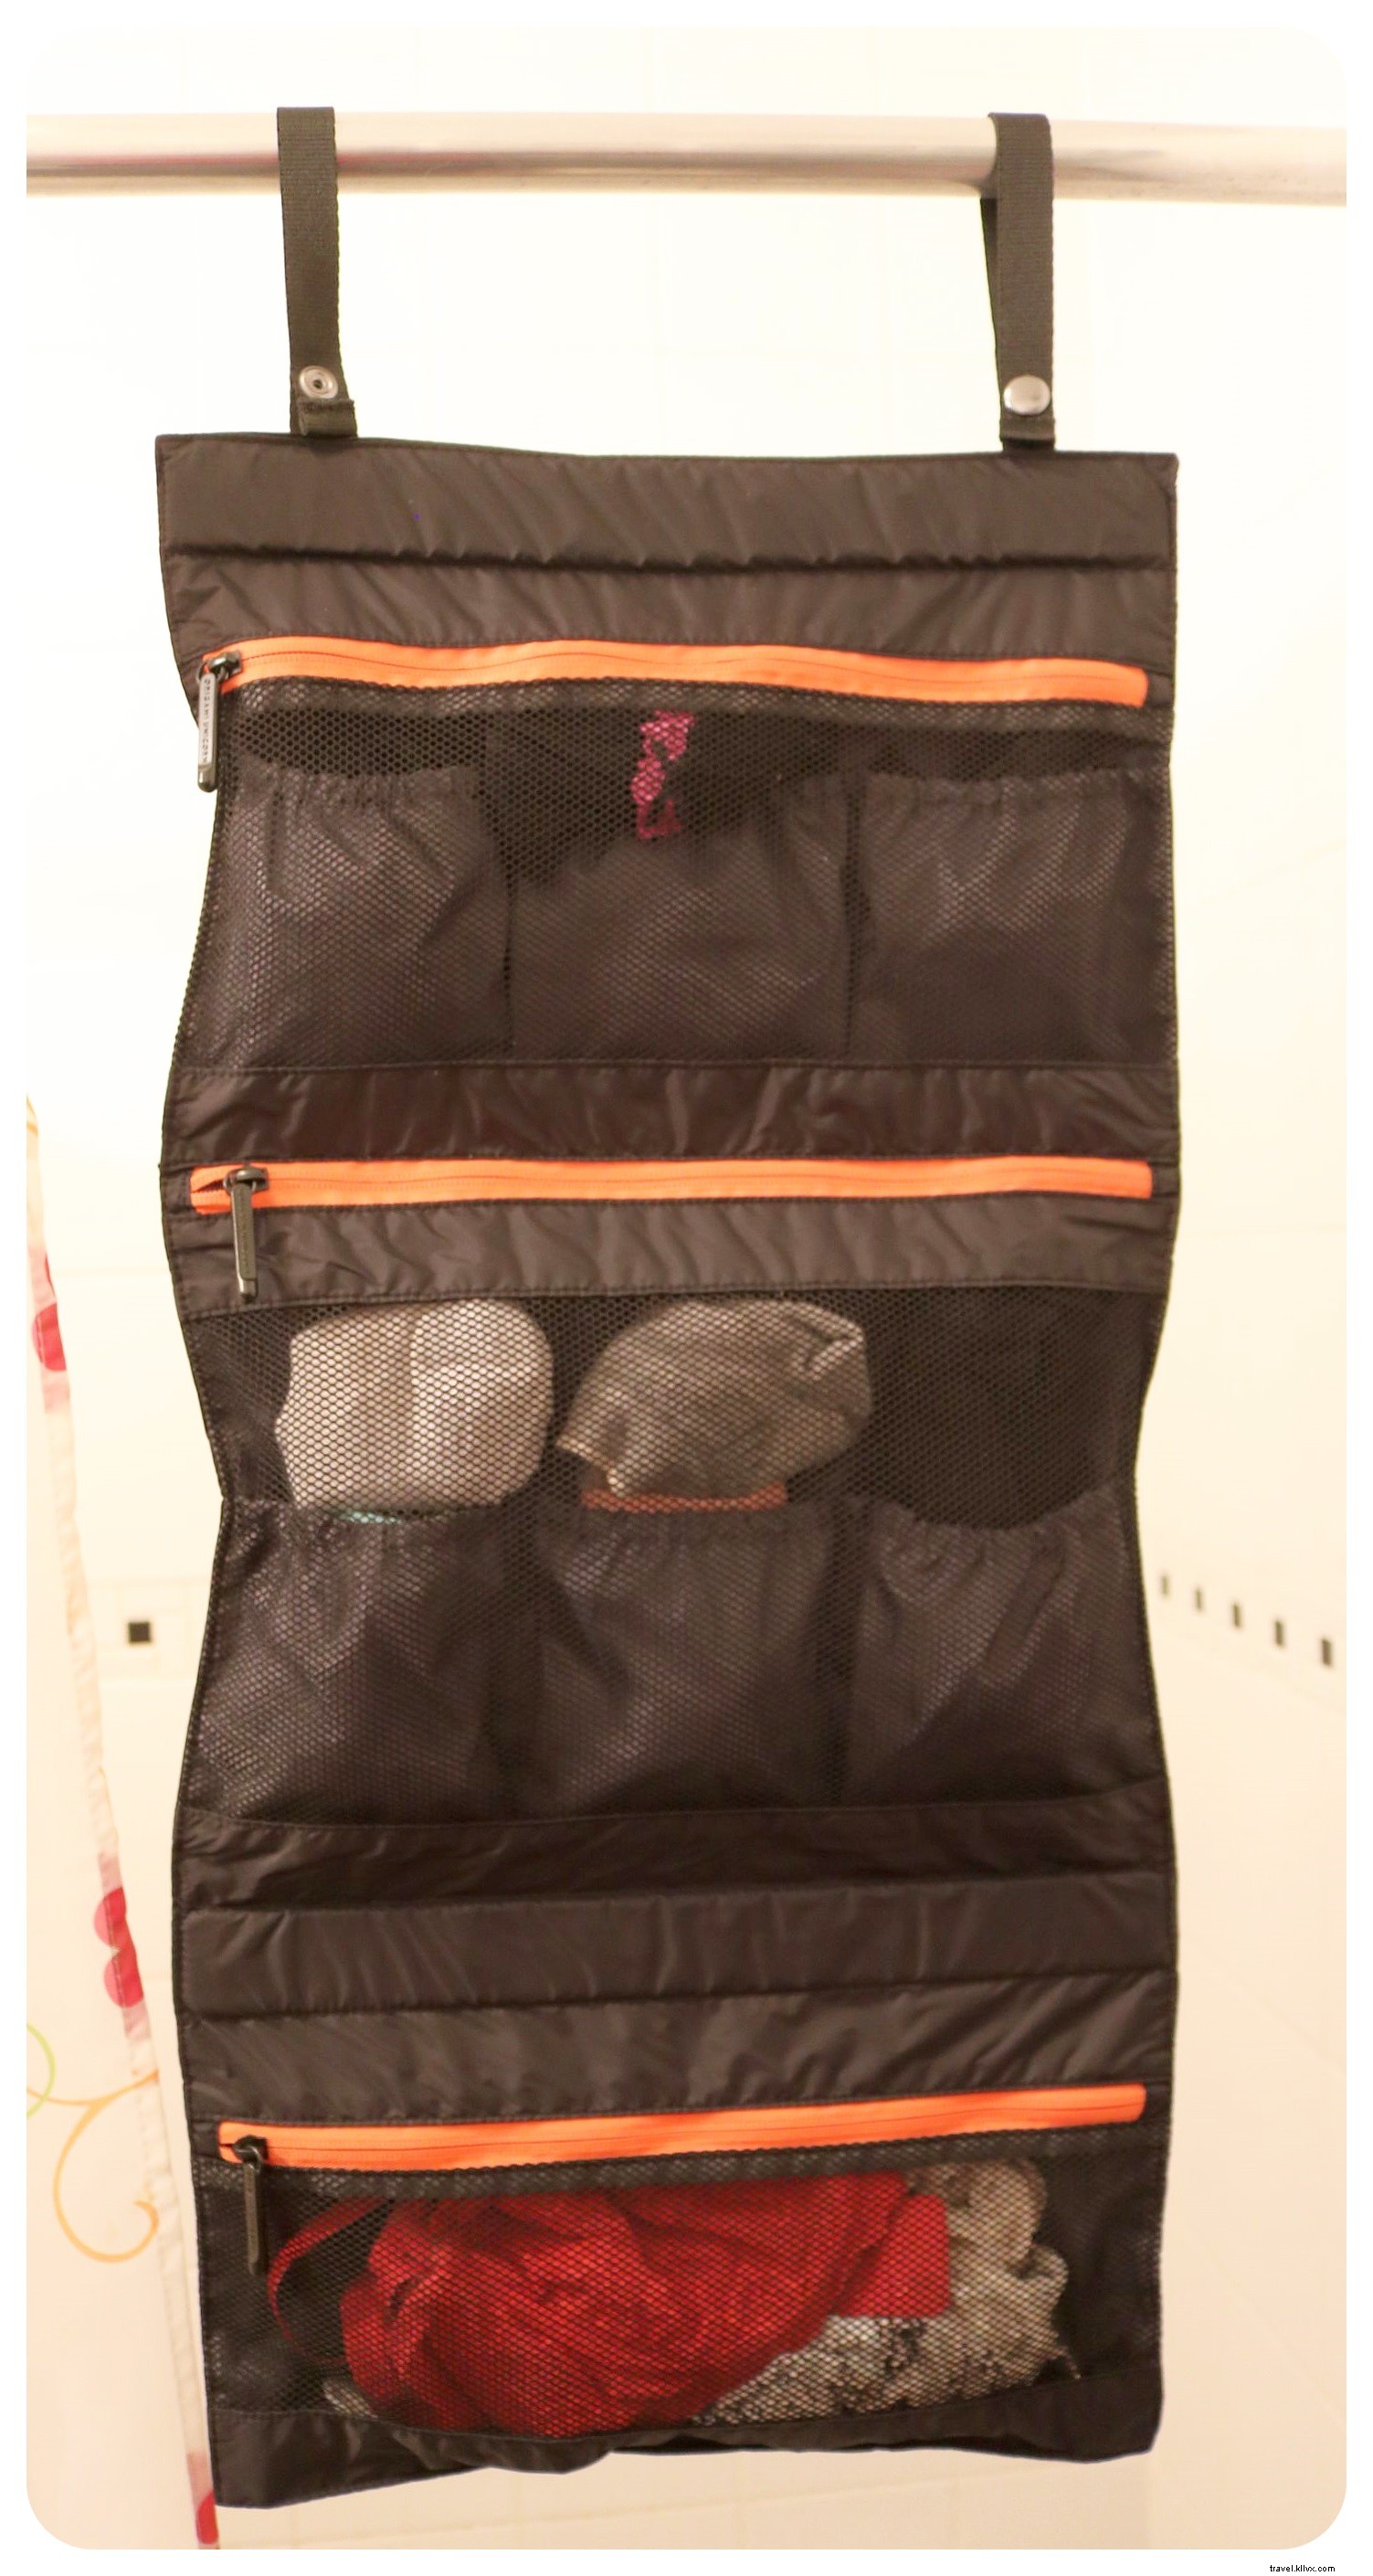 Embalagem facilitada com o TUO, o organizador de roupas íntimas de viagem definitivo